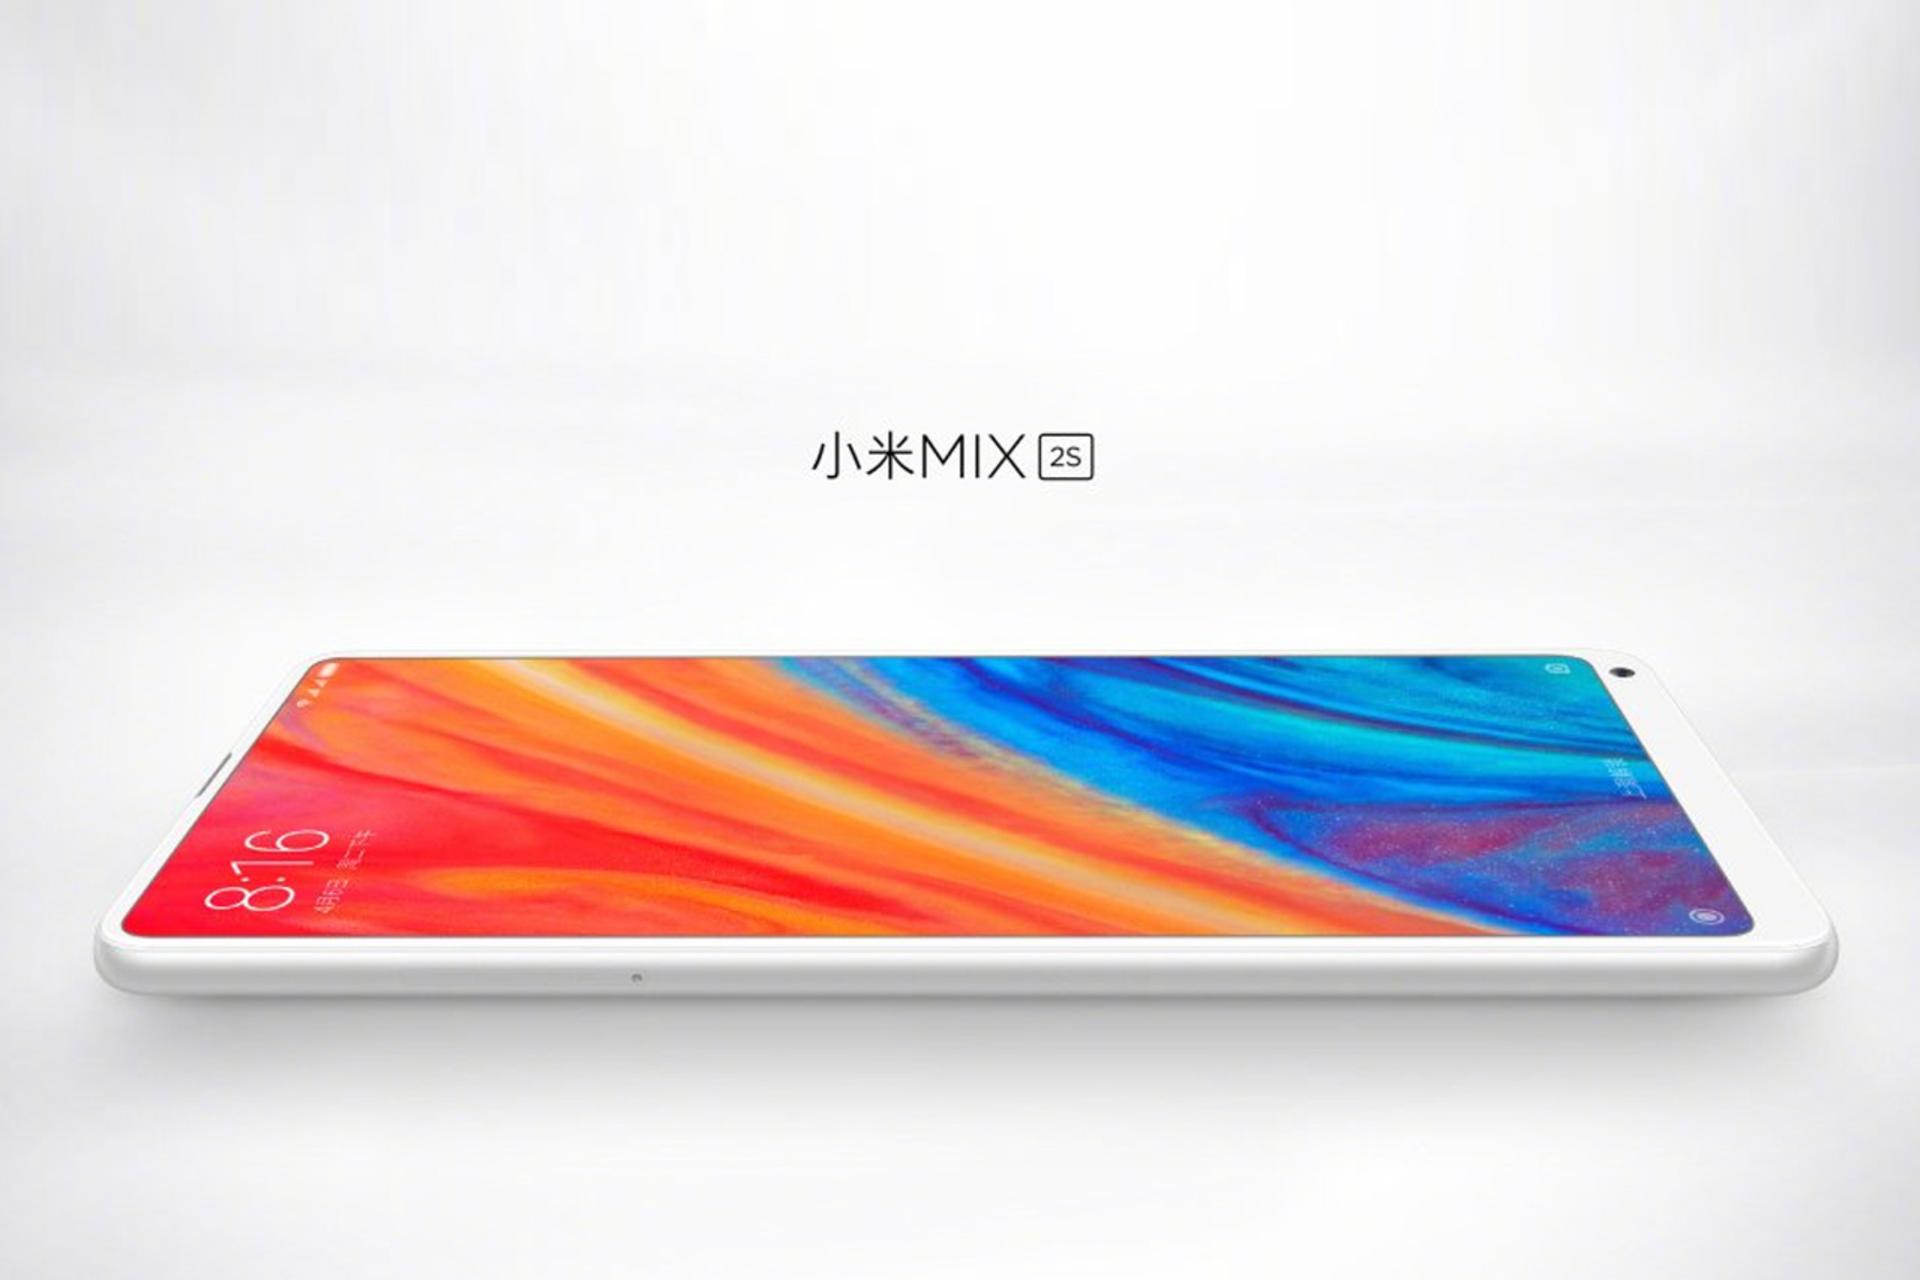 شیائومی می میکس 2 اس / Xiaomi mi mix 2s